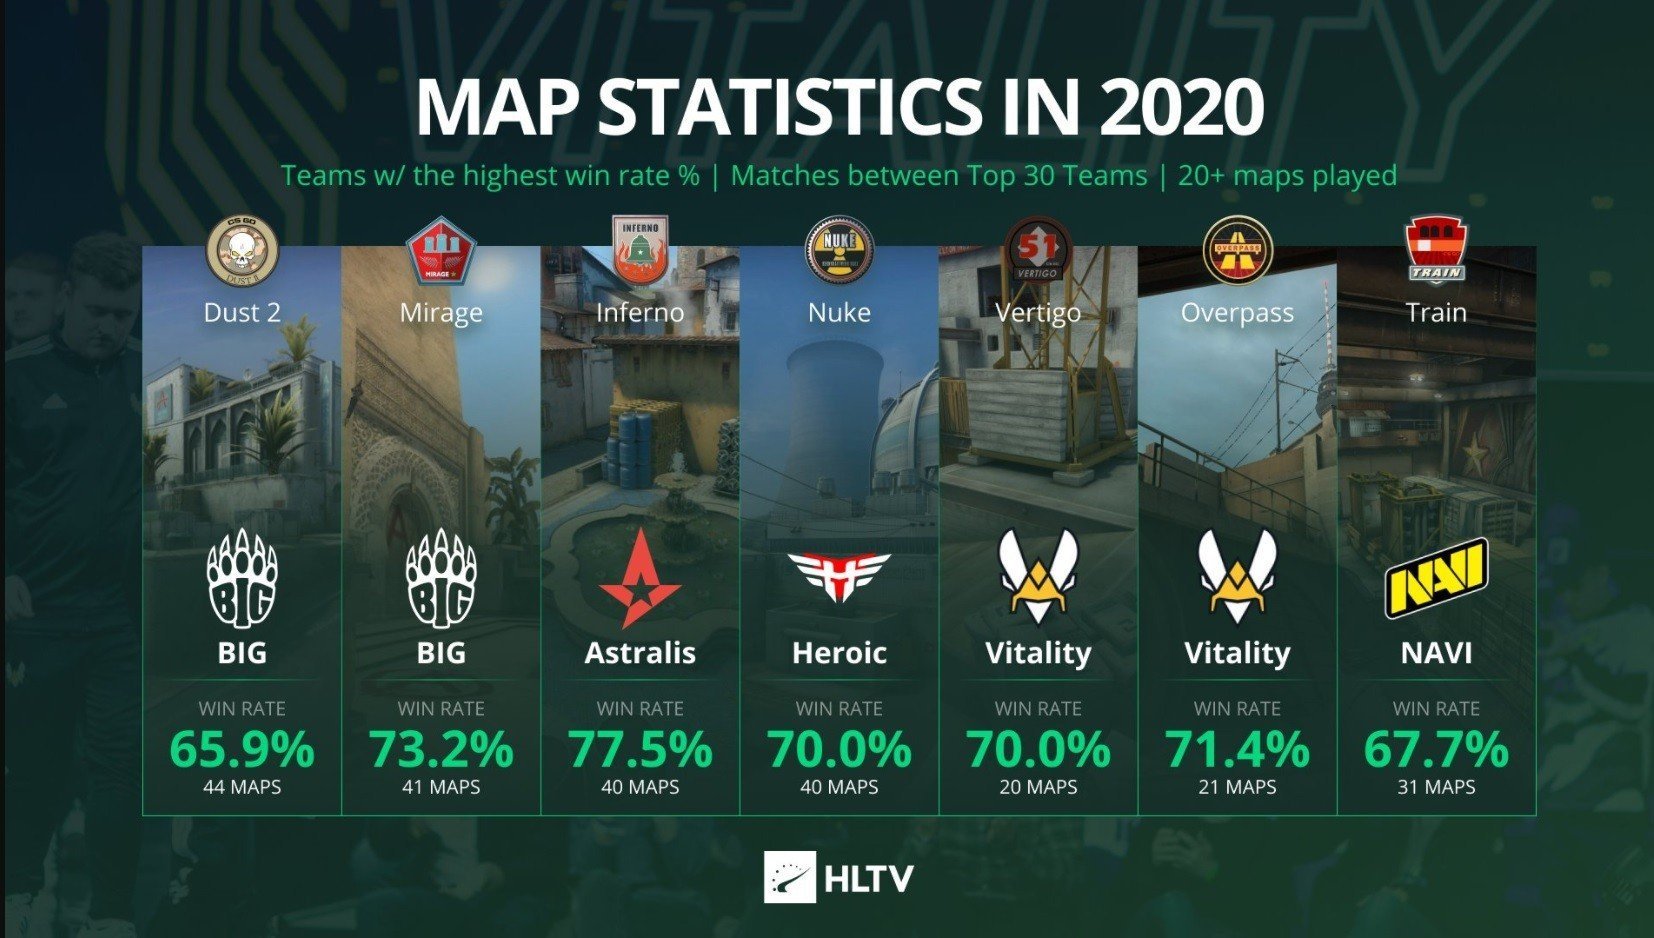 NAVI лучшая команда по игре на карте Train в 2020 году